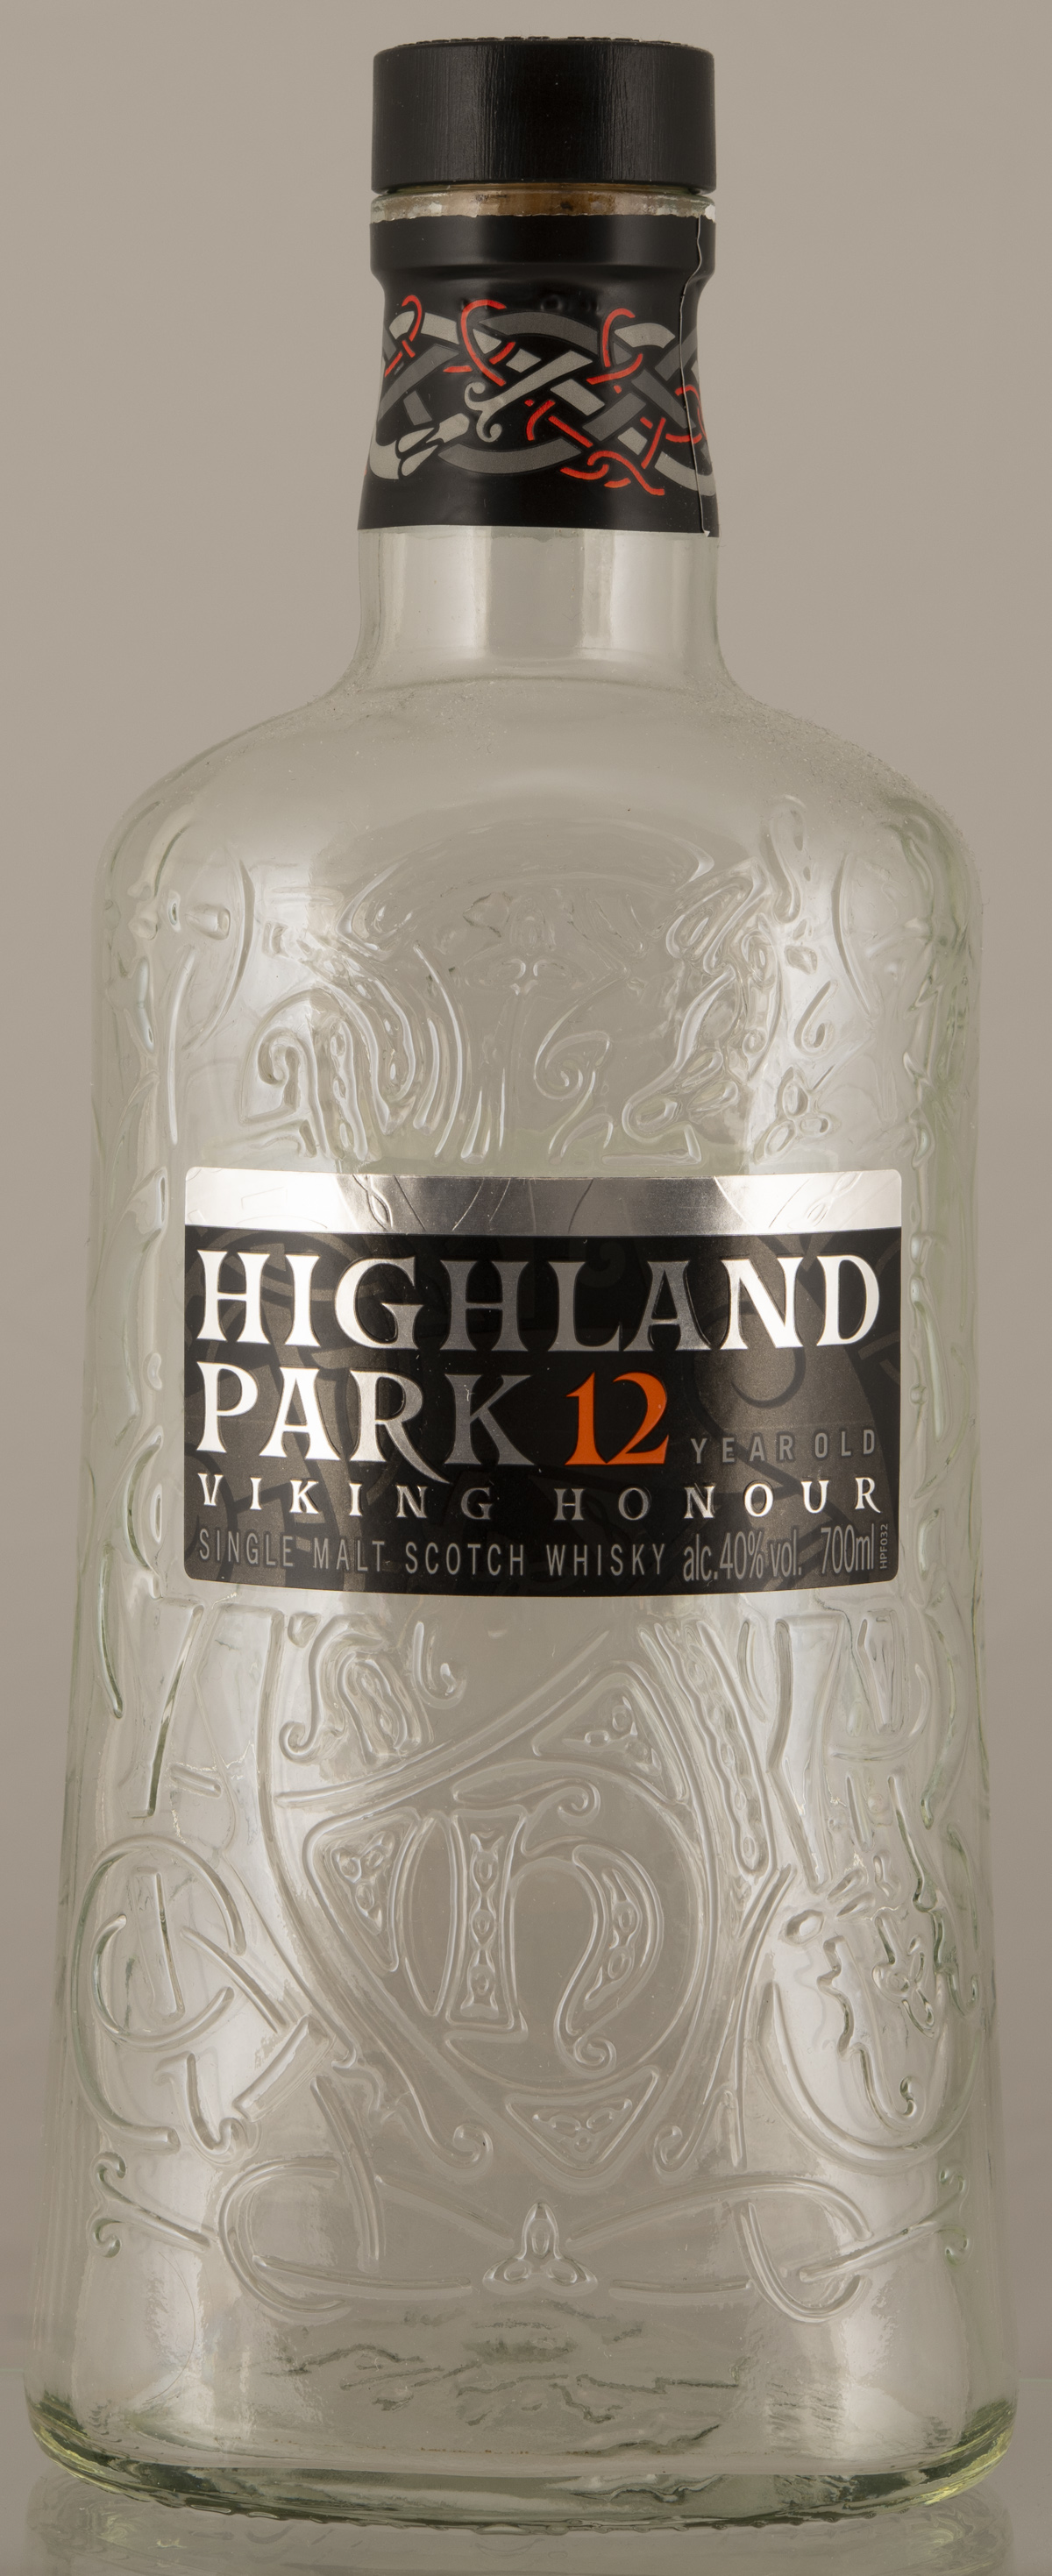 Billede: D85_8410 - Highland Park 12 - bottle front.jpg